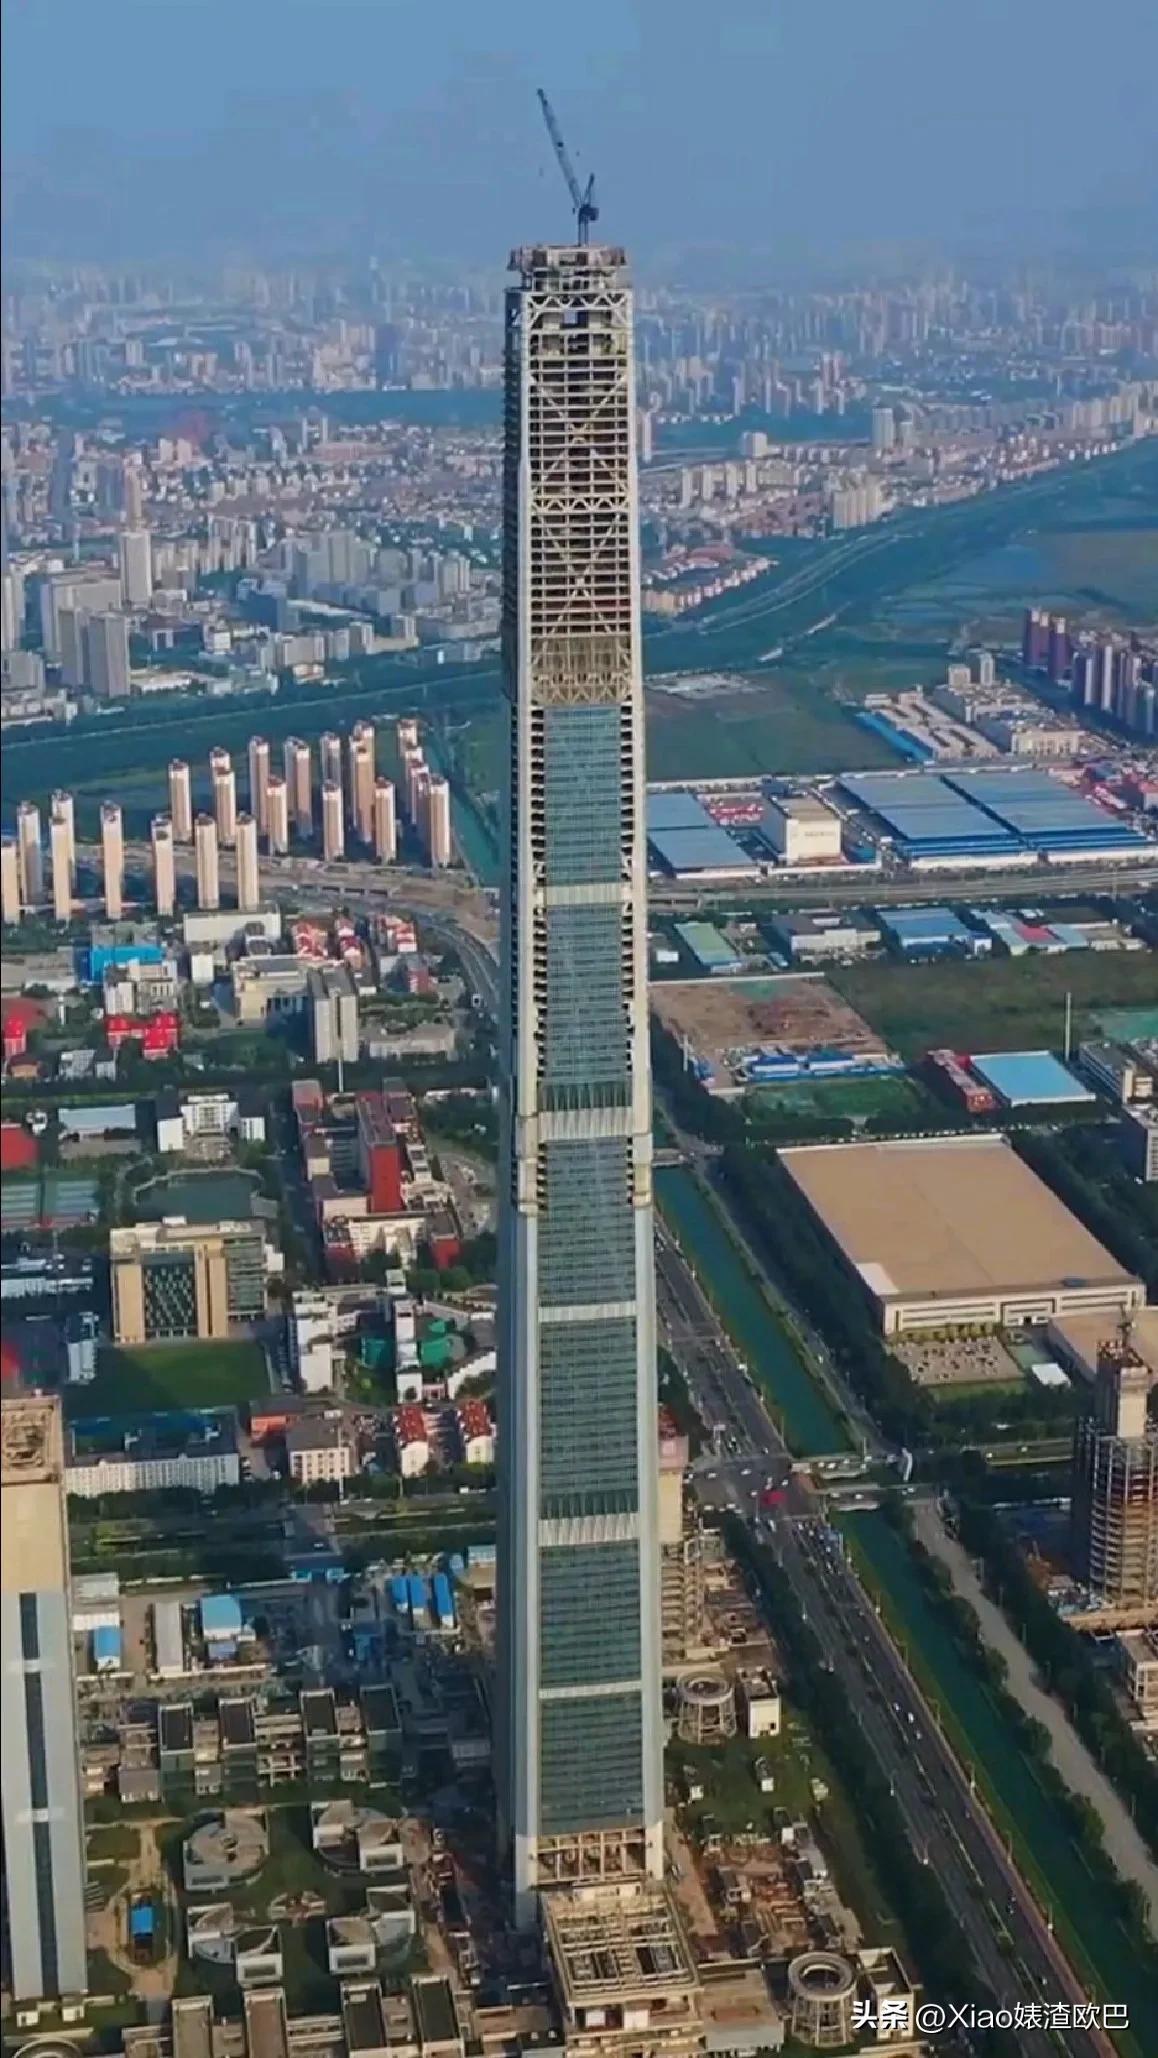 596.5米高的中国结构第一高摩天楼